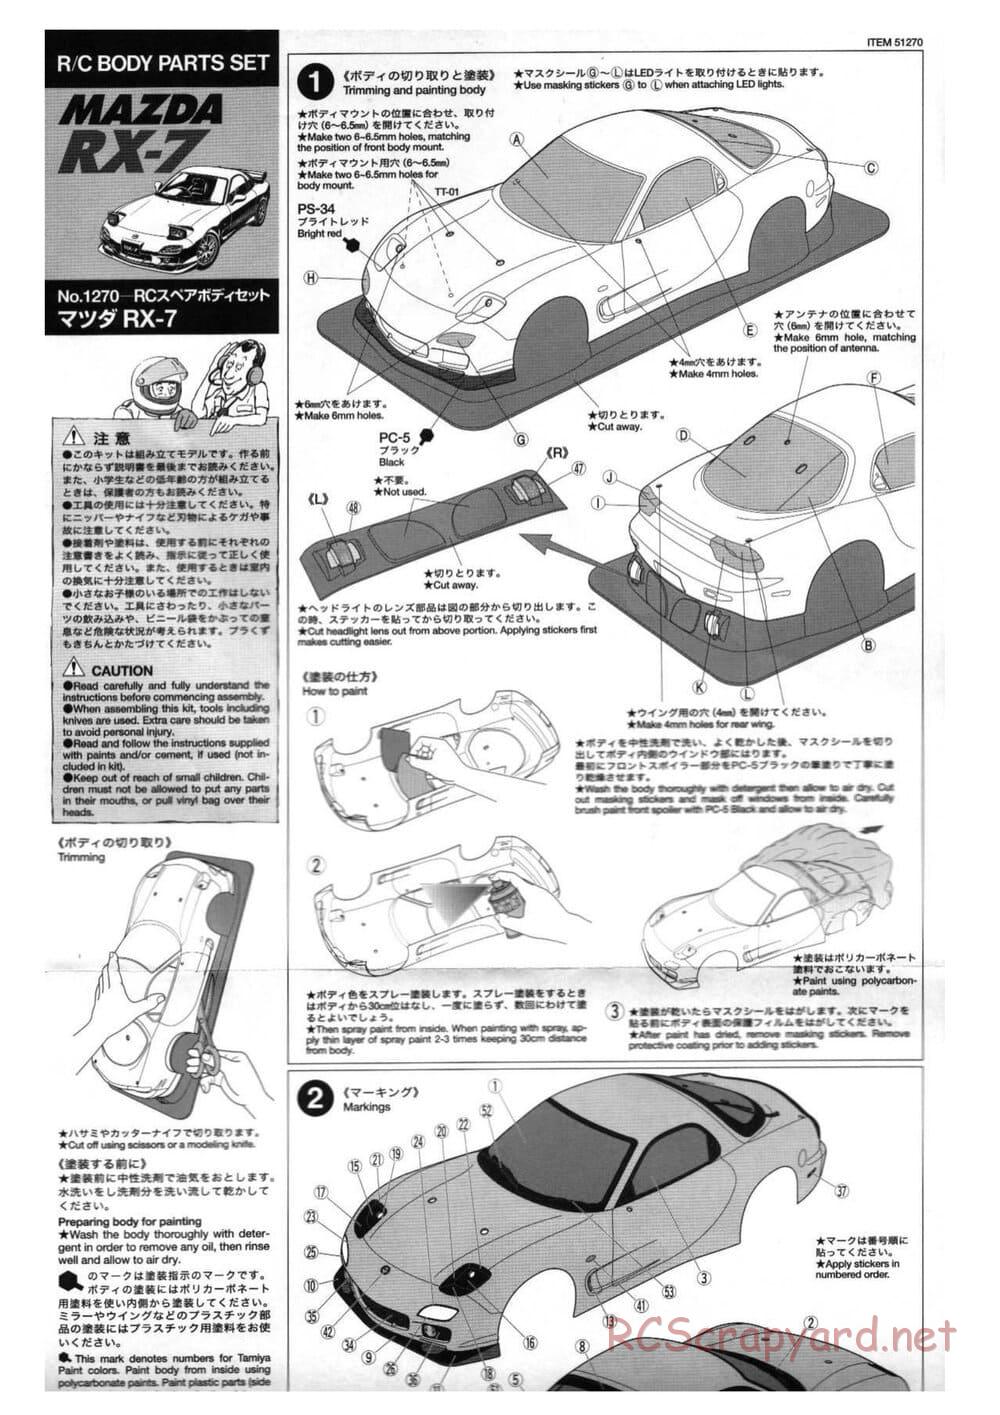 Tamiya - Mazda RX-7 - TT-01 Chassis - Body Manual - Page 1